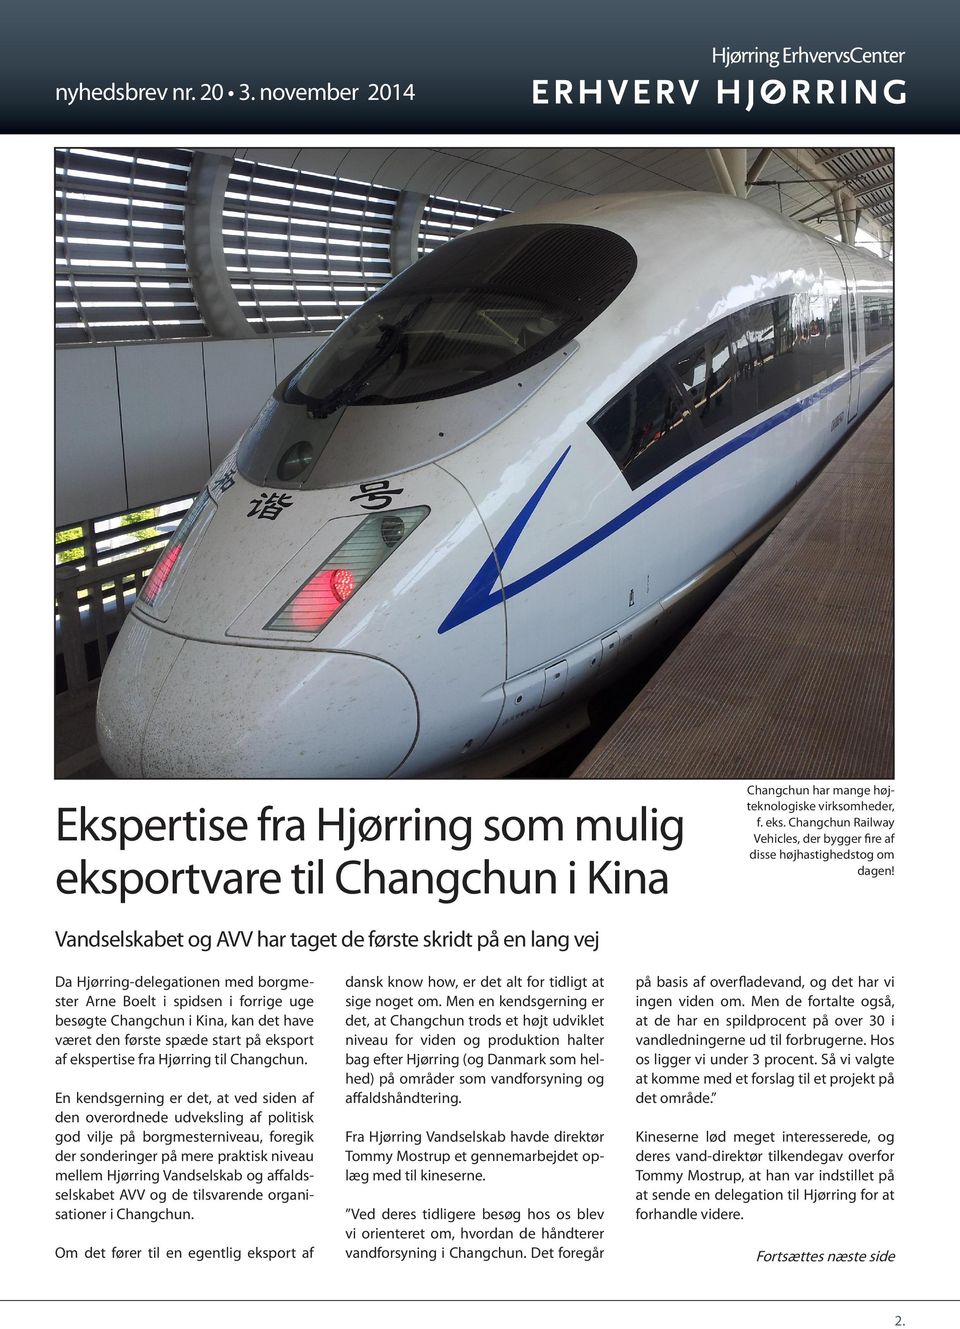 start på eksport af ekspertise fra Hjørring til Changchun.